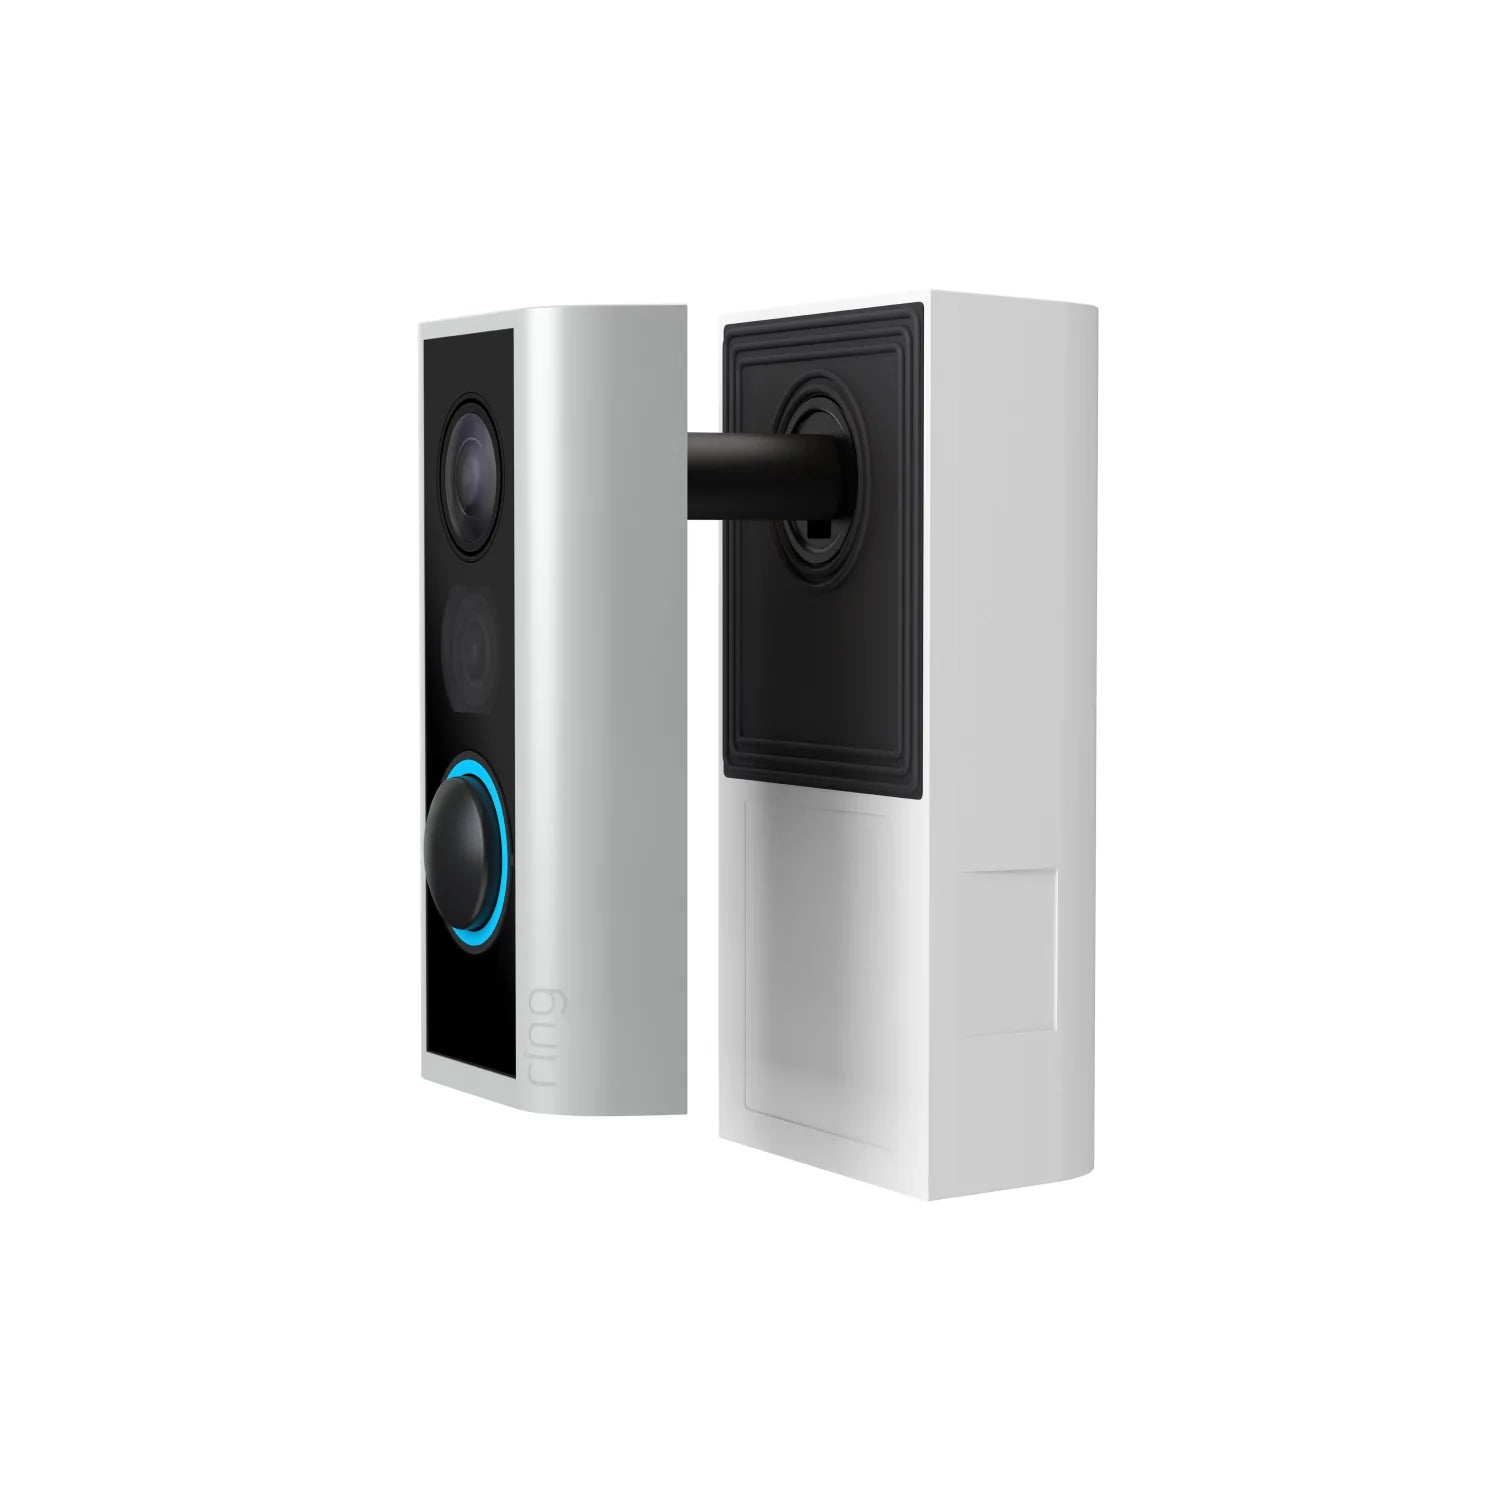 Peephole Cam (Video Doorbell) - Peephole Cam Video Doorbell